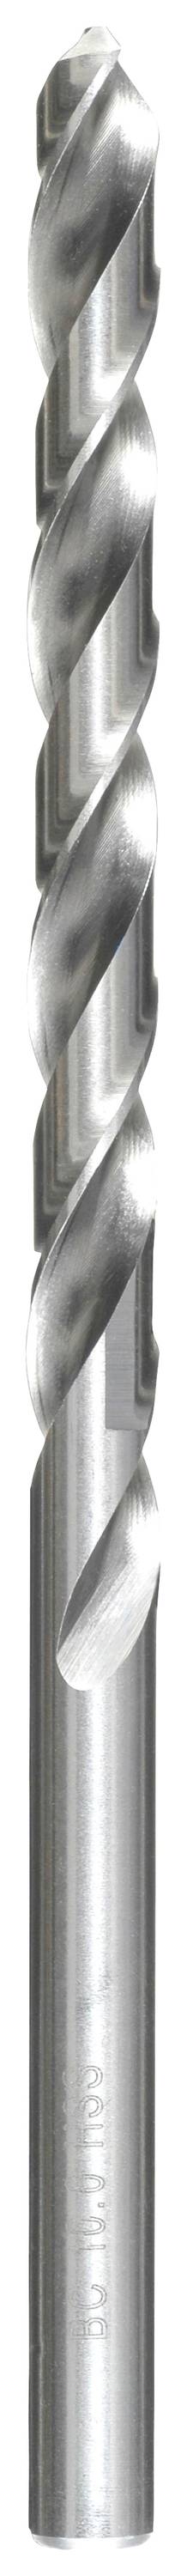 KWB 217075 HSS Spiralbohrer 1 Stück 7.5 mm Gesamtlänge 156 mm DIN 340 Zahnkranzbohrfutter 1 St.